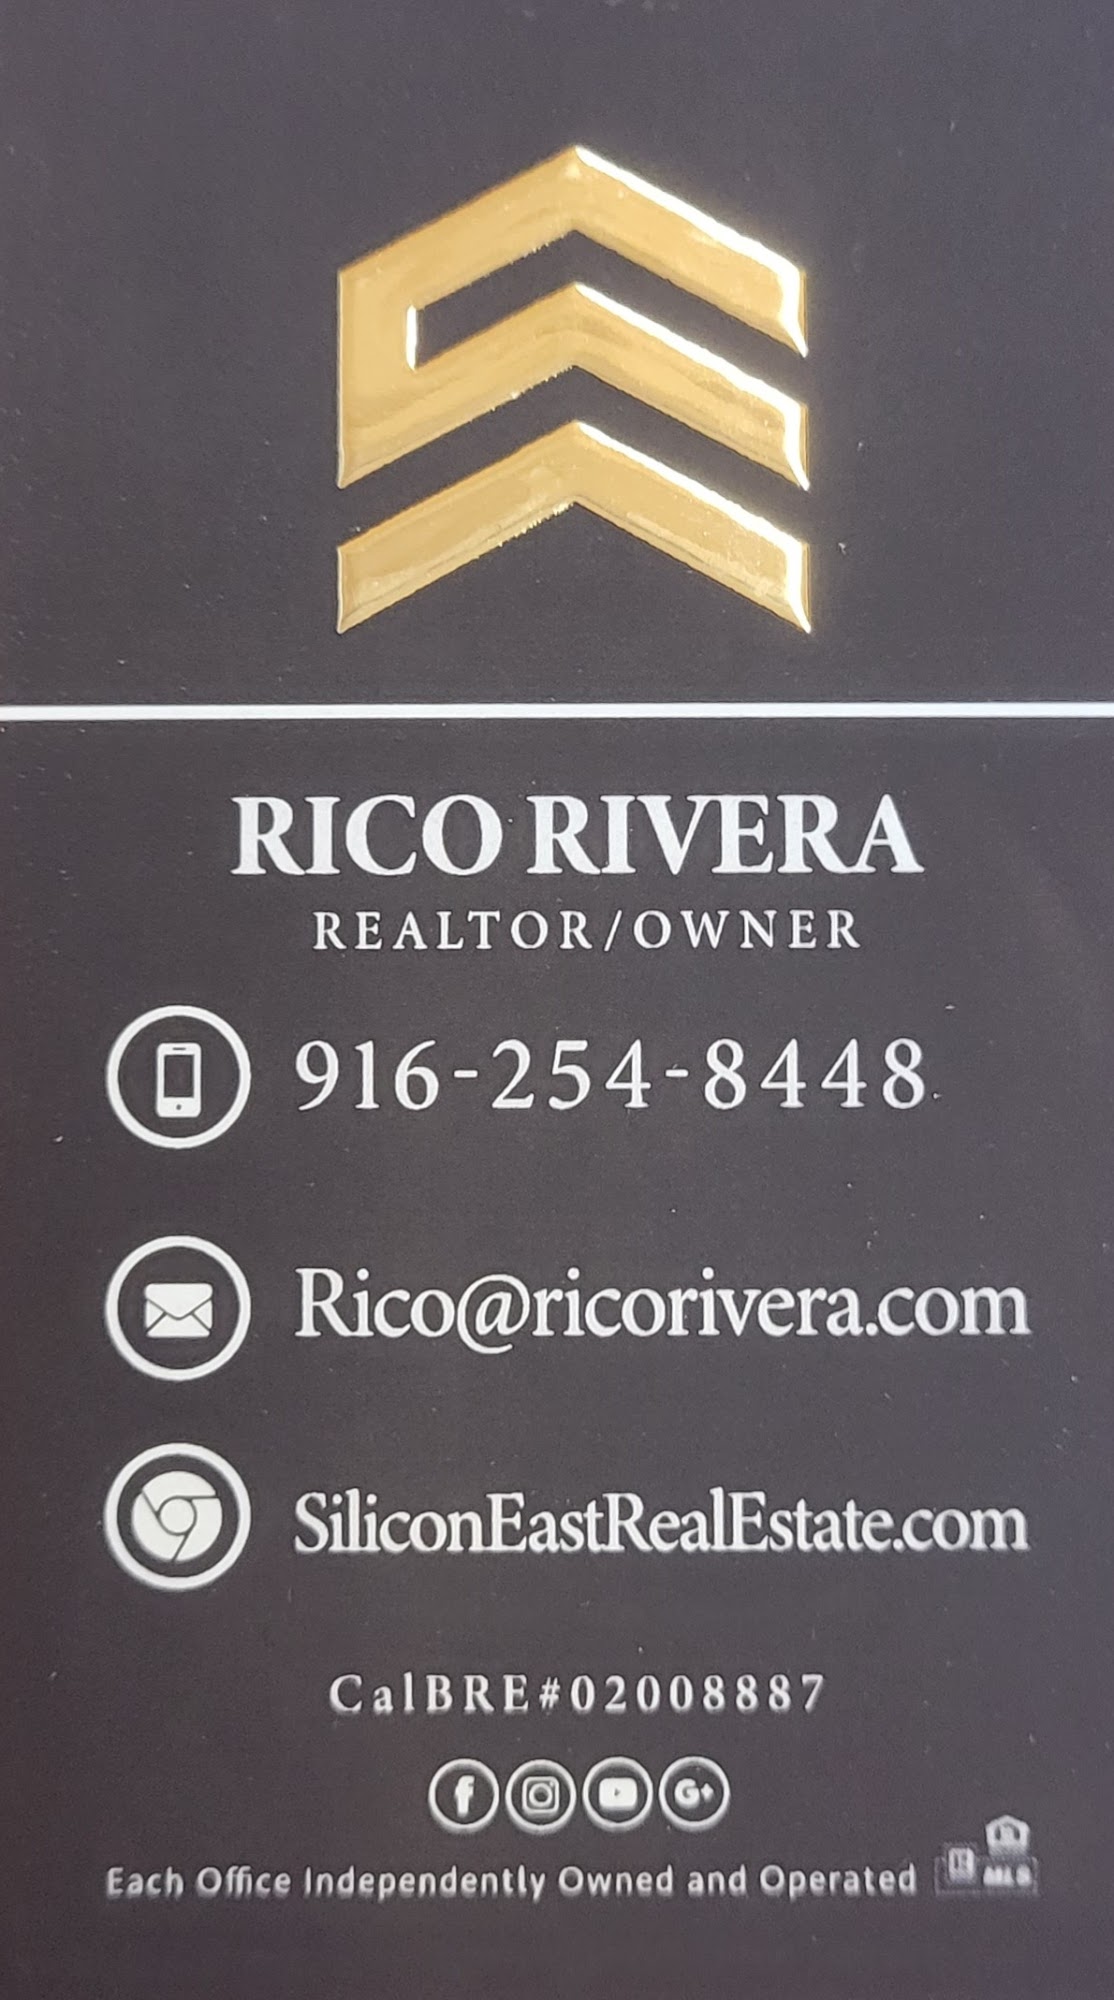 Rico Rivera Realtor- Silicon East Real Estate, Sacramento County